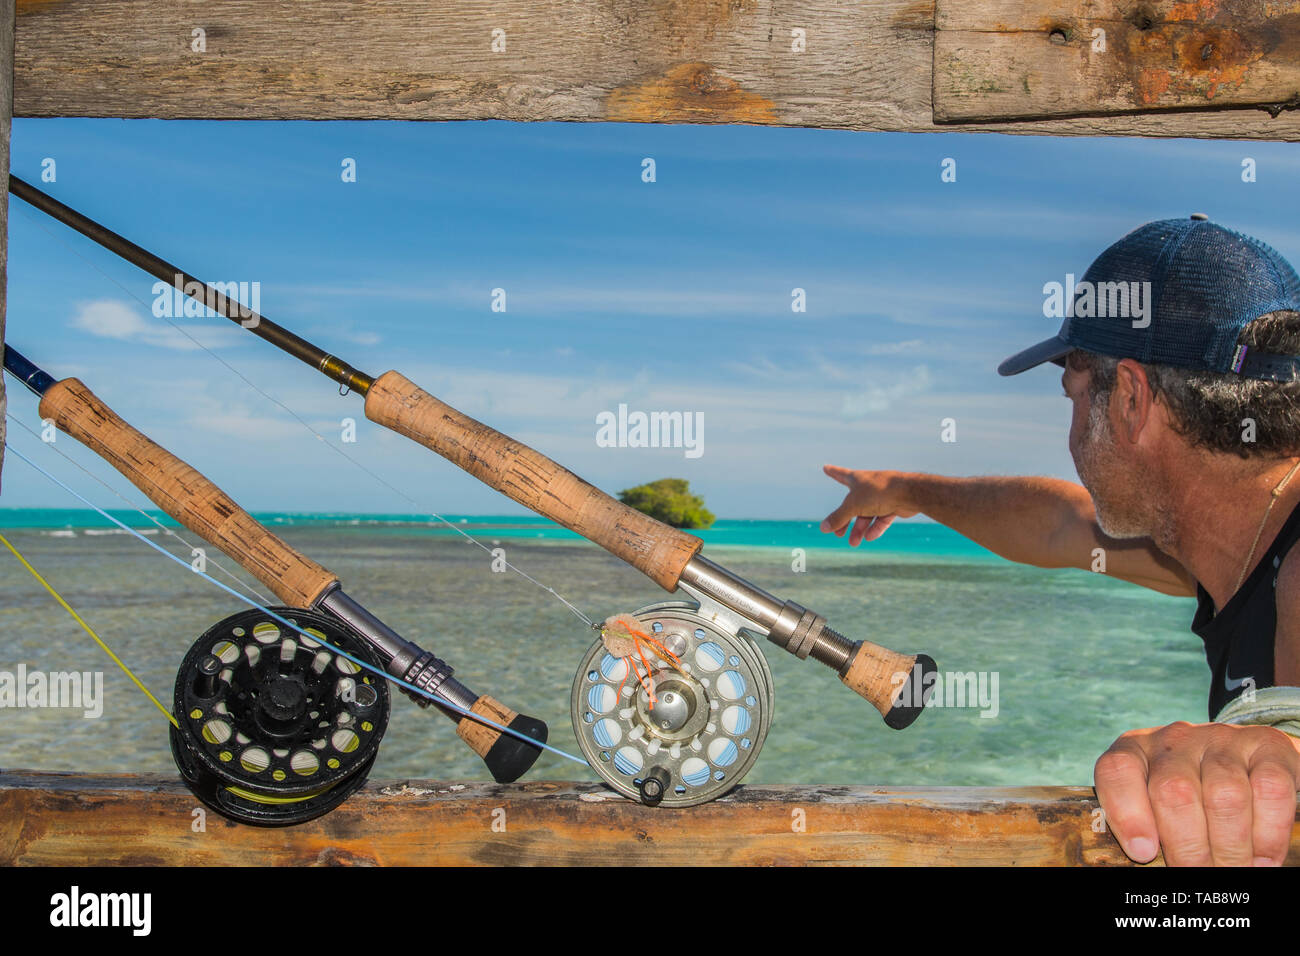 https://c8.alamy.com/compes/tab8w9/pescador-con-equipo-de-pesca-deportiva-en-manglar-tropical-archipielago-de-los-roques-venezuela-tab8w9.jpg